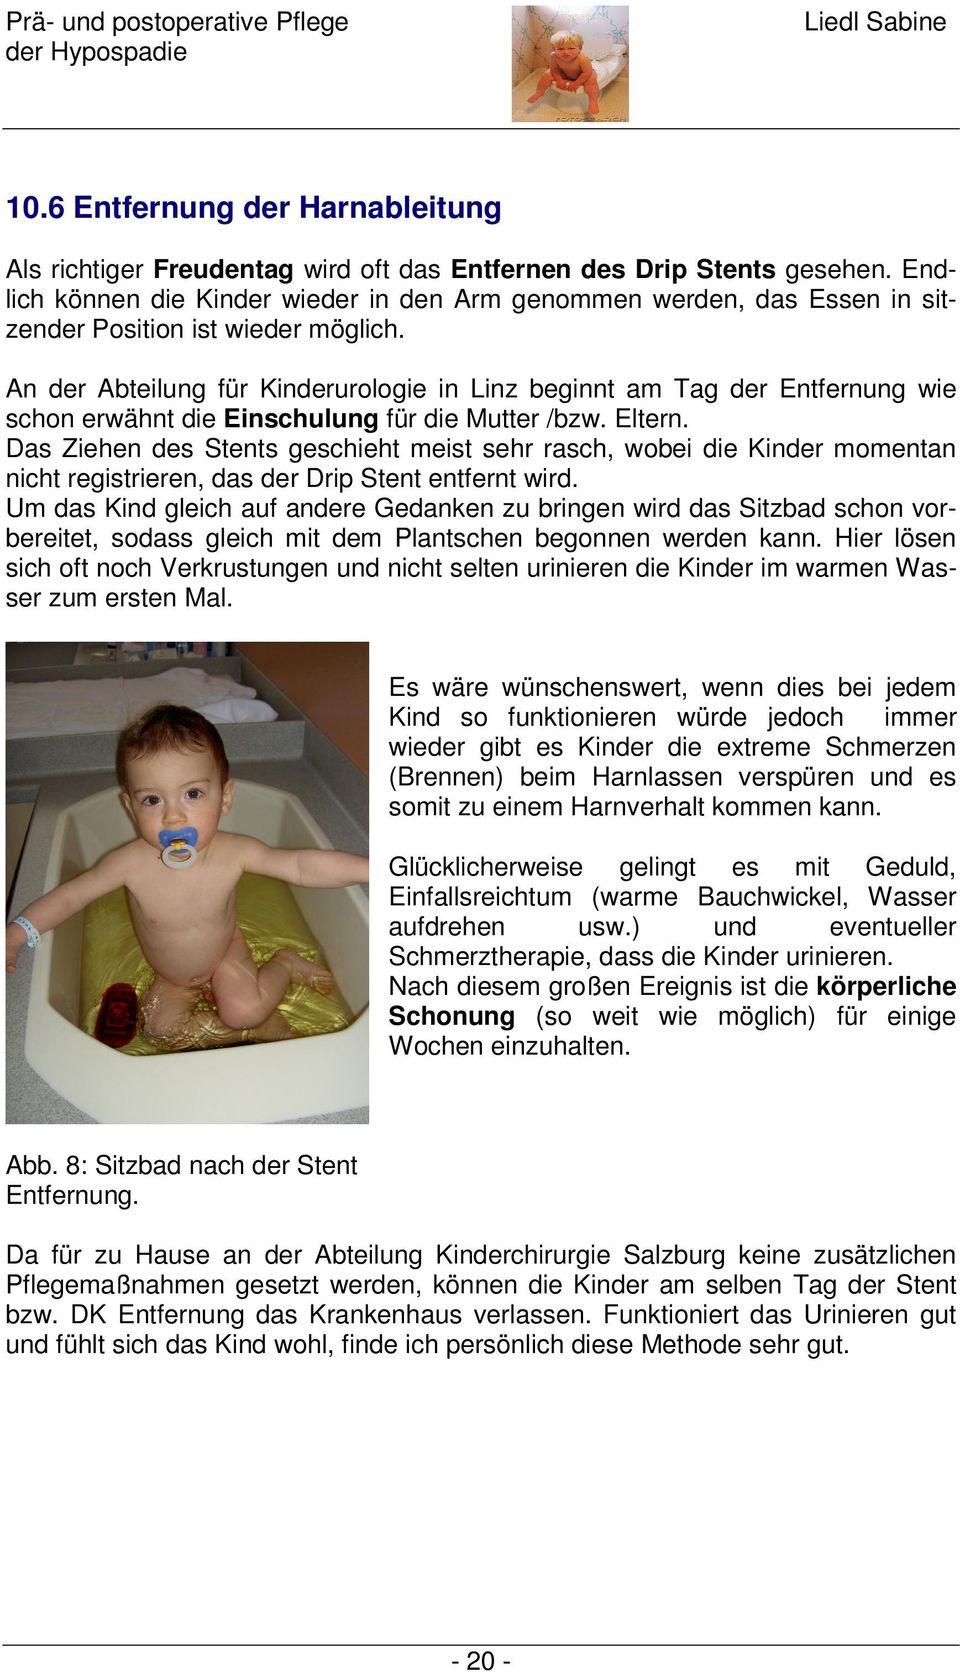 An der Abteilung für Kinderurologie in Linz beginnt am Tag der Entfernung wie schon erwähnt die Einschulung für die Mutter /bzw. Eltern.